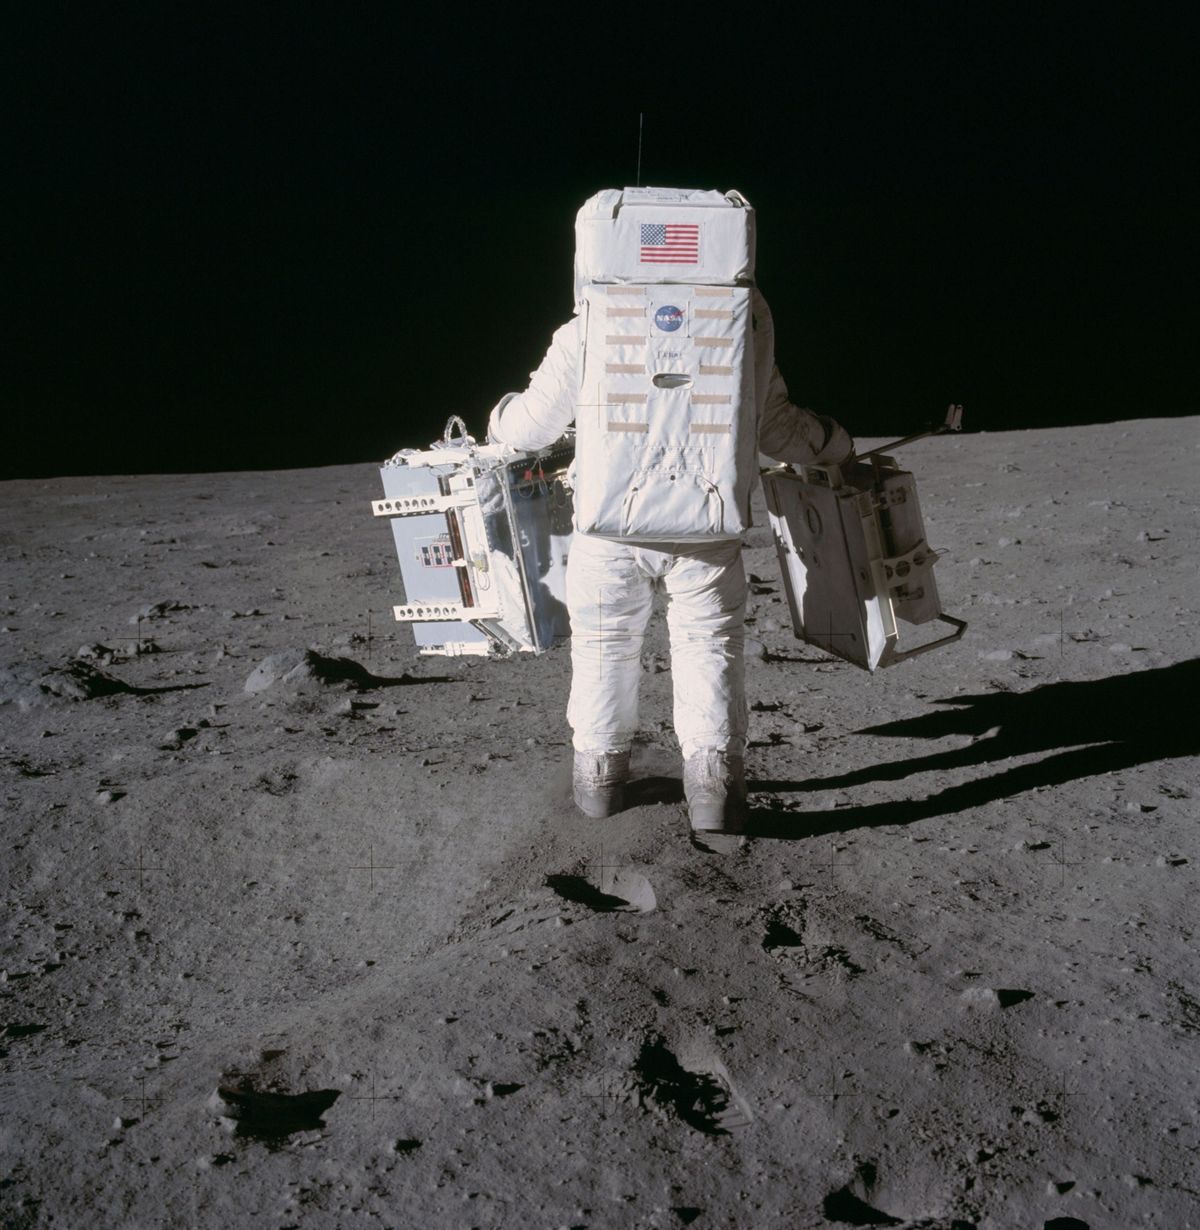 Tijdens de Apollo 11missie in 1969 maakt NASAastronaut Edwin Buzz Aldrin zich op om twee onderdelen van het Early Apollo Scientific Experiments Package op het maanoppervlak te installeren Vorige week veroorzaakte de veiling van een fractie van het allereerste stofmonster dat door de Apollo 11bemanning werd genomen de nodige ophef onder astronomen en juristen